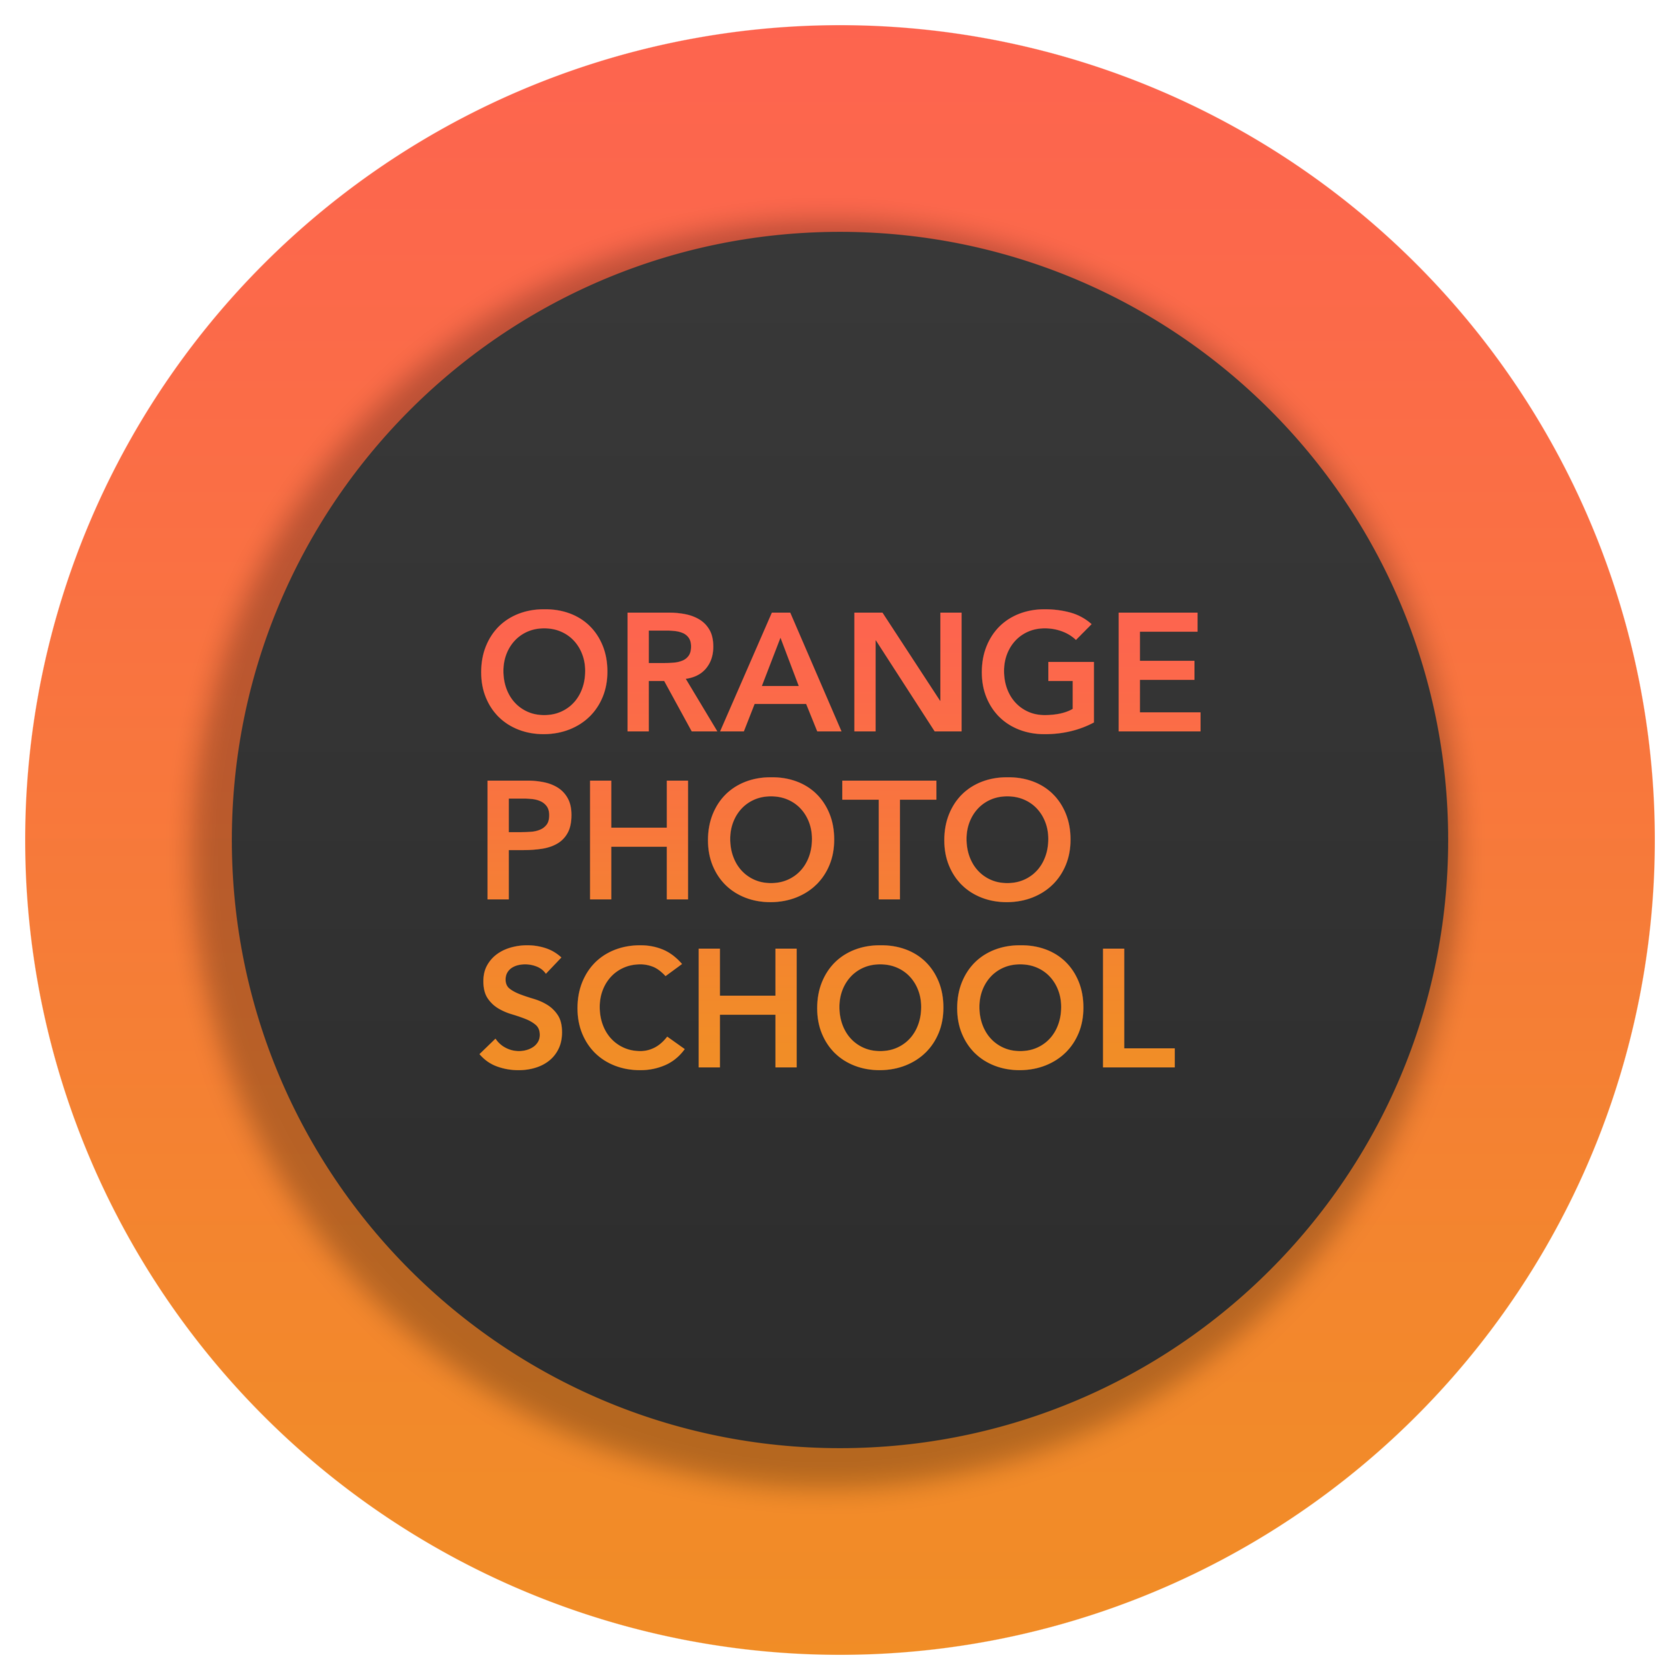 ORANGE PHOTO SCHOOL